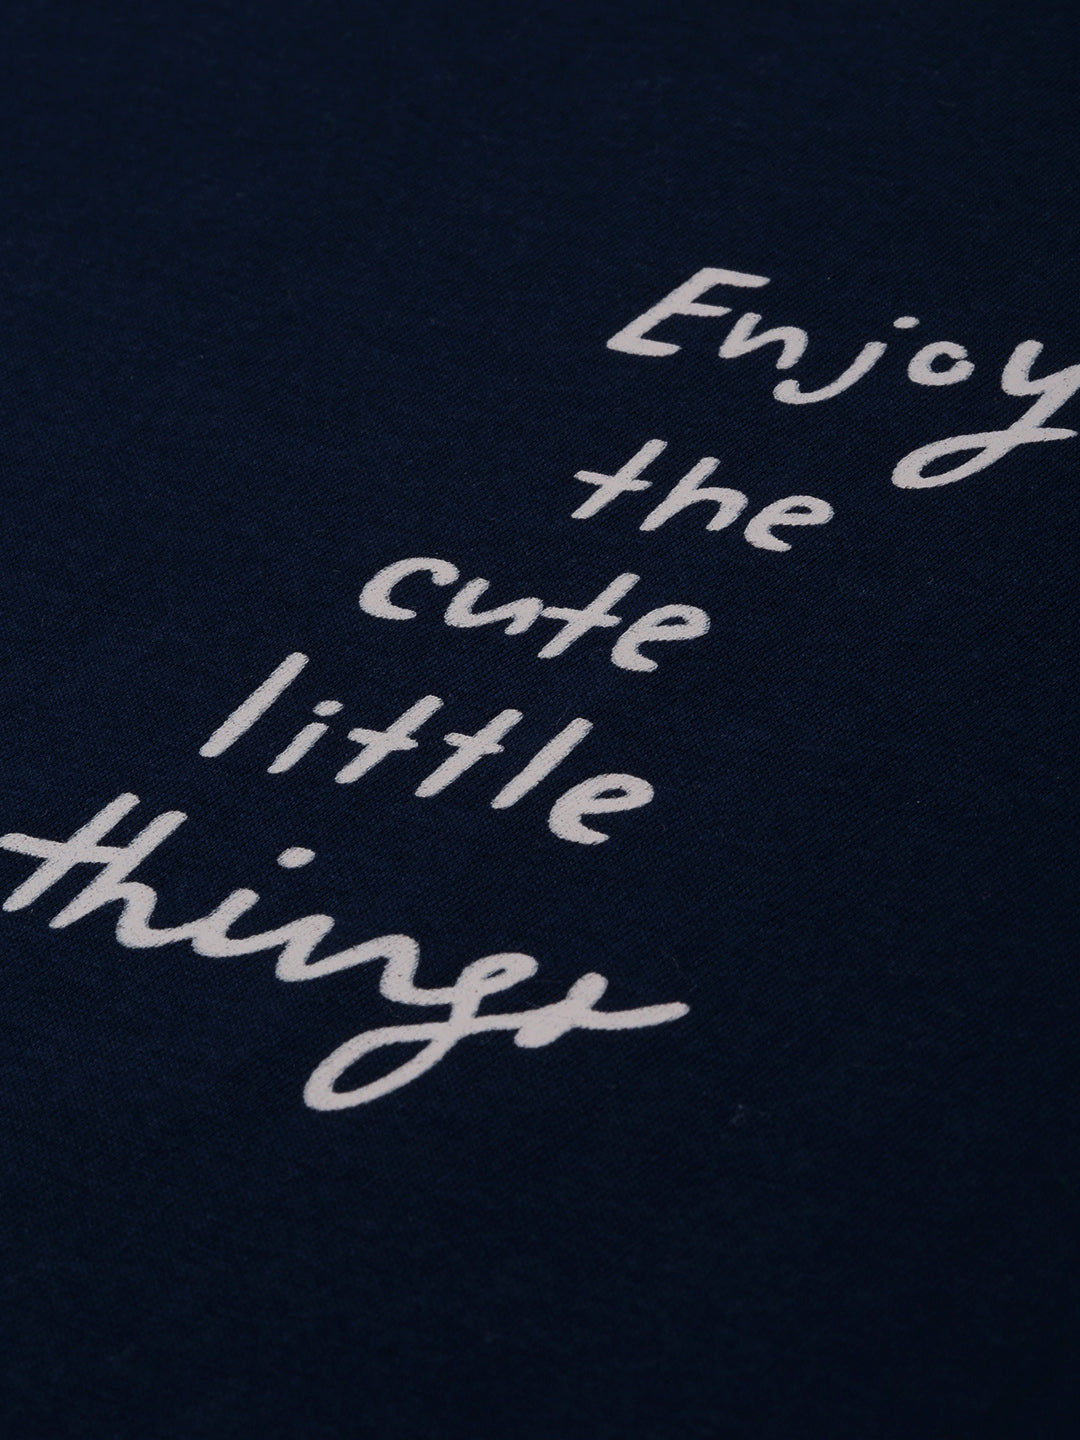 Navy Blue & Cream Typography Printed Boyfriend T-shirt(Cotton)